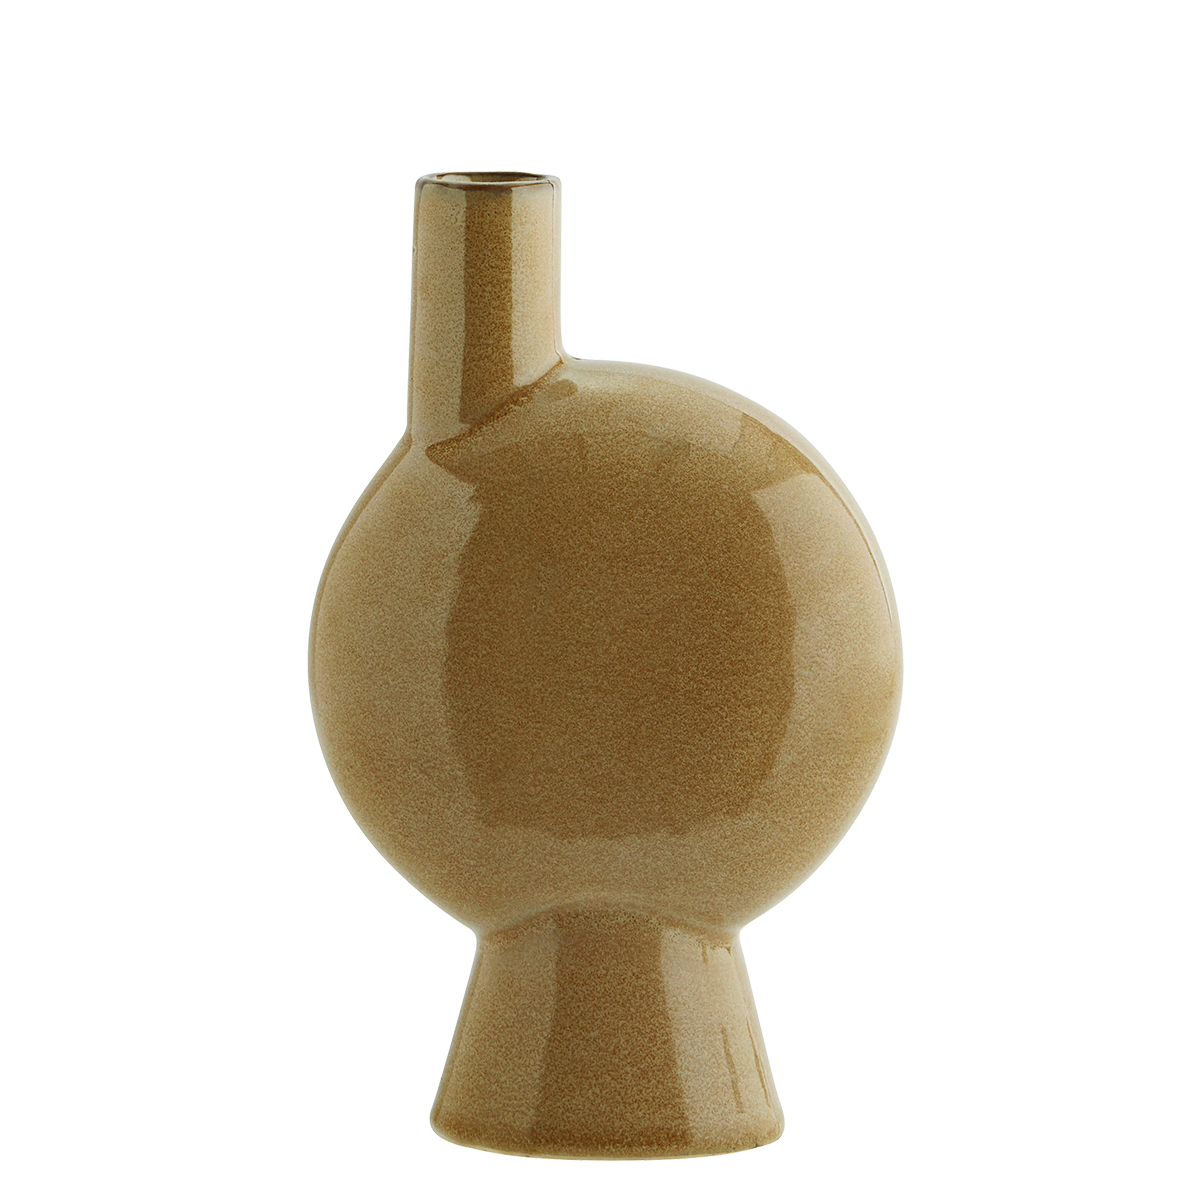 Madam Stoltz Mustard Brown Stoneware Chimney Vase